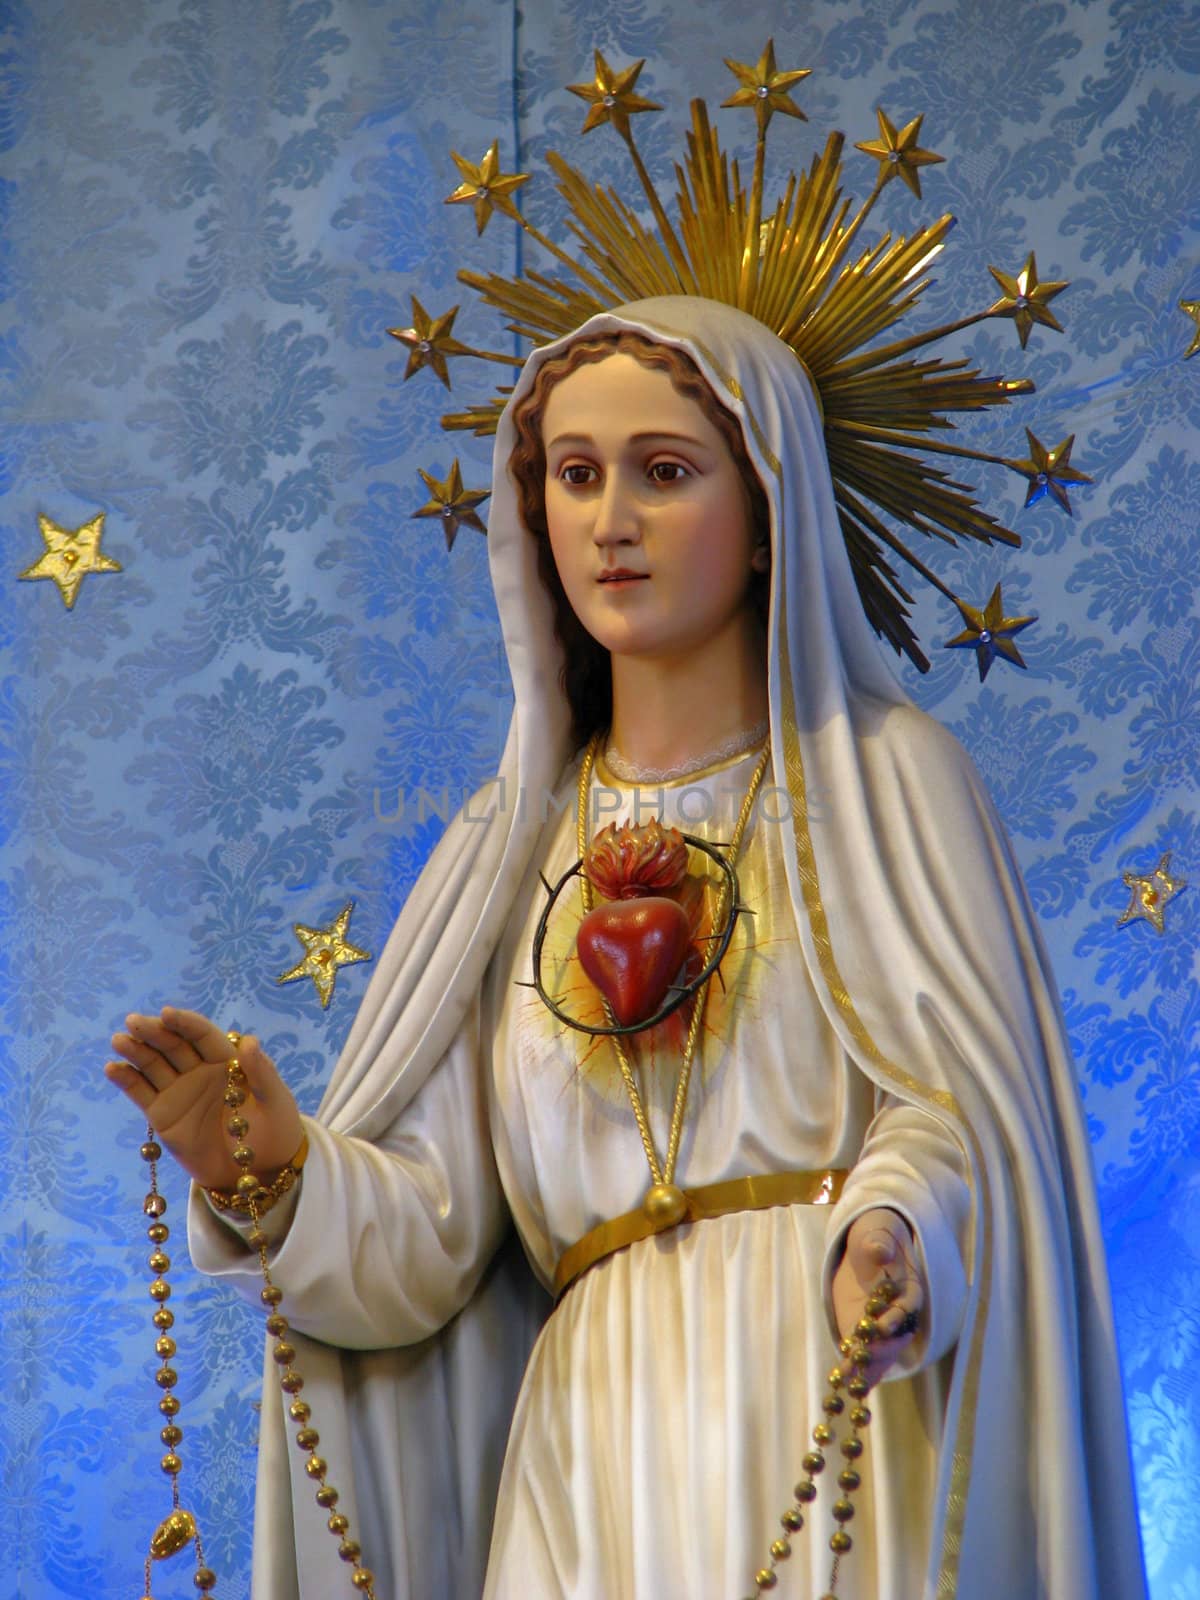 Our Lady of Fatima by fajjenzu